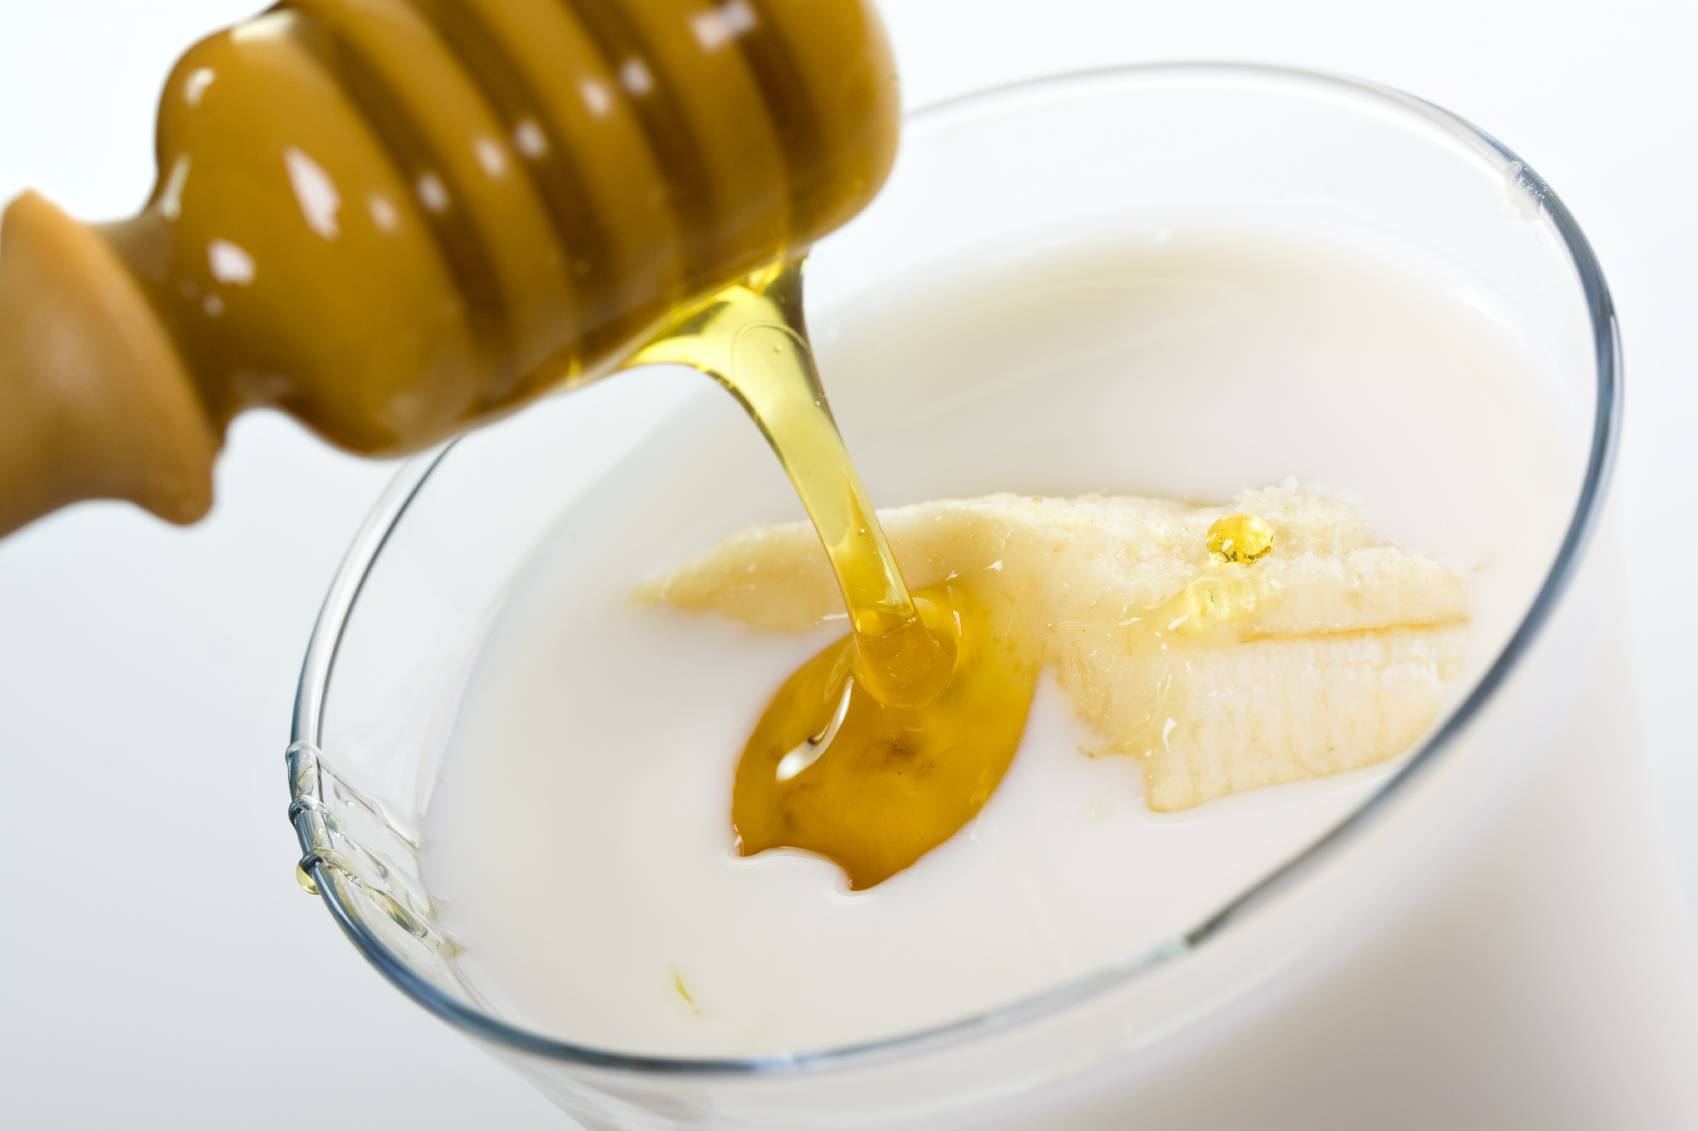 Банан с молоком от кашля: рецепт ребенку и взрослому, отзывы